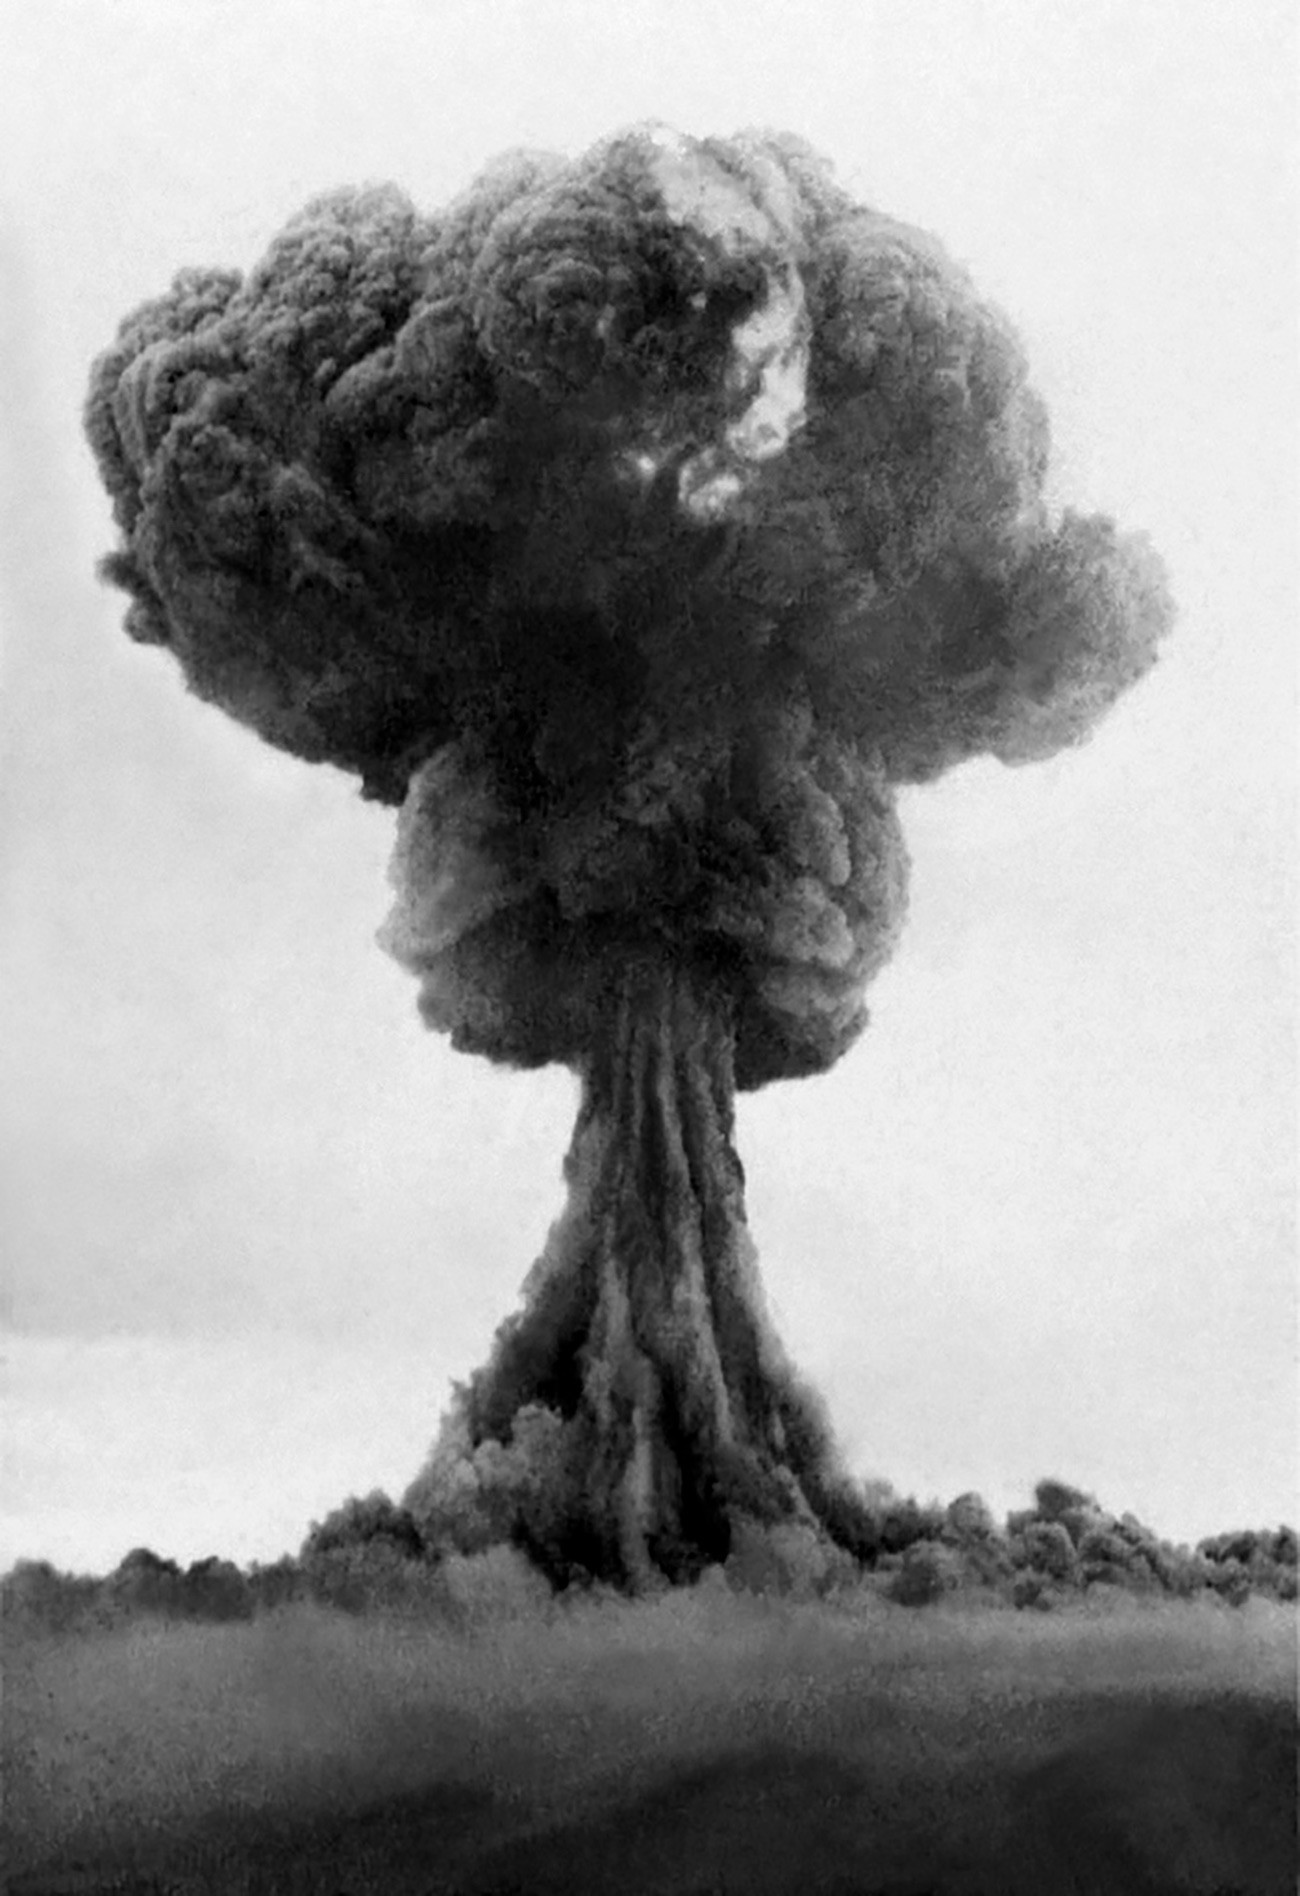 Eksplozija atomske bombe RDS-1.

